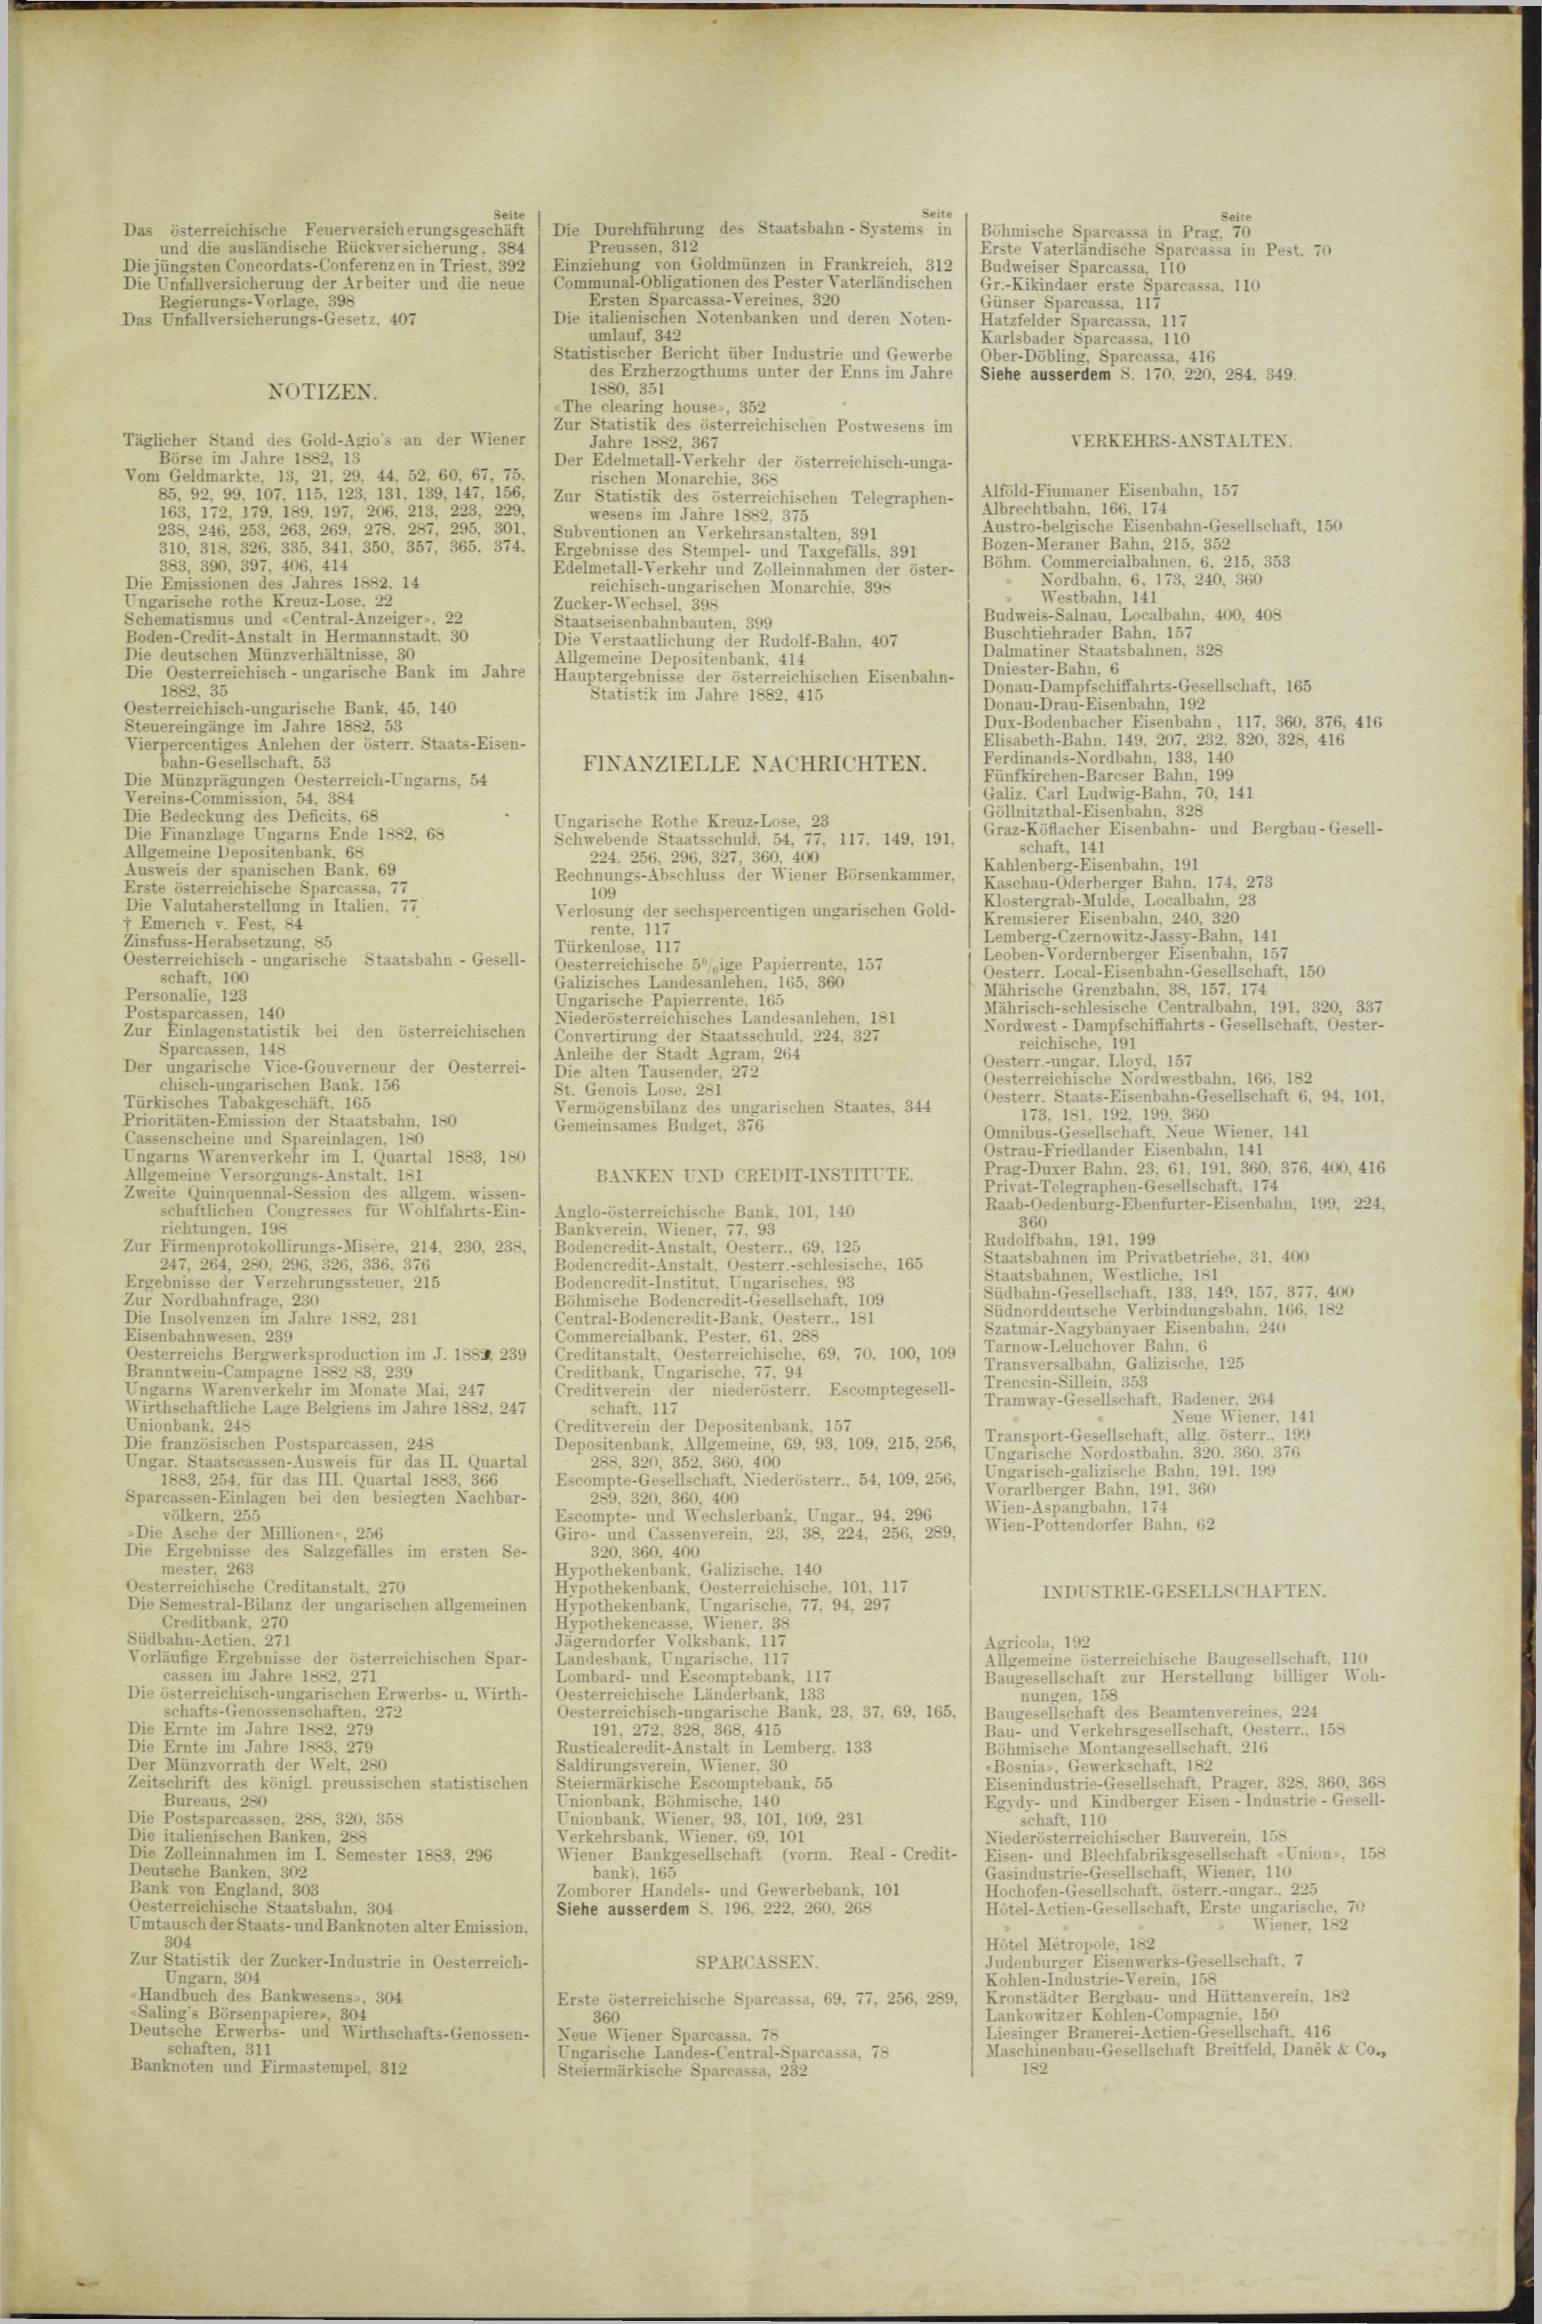 Der Tresor 24.05.1883 - Seite 11